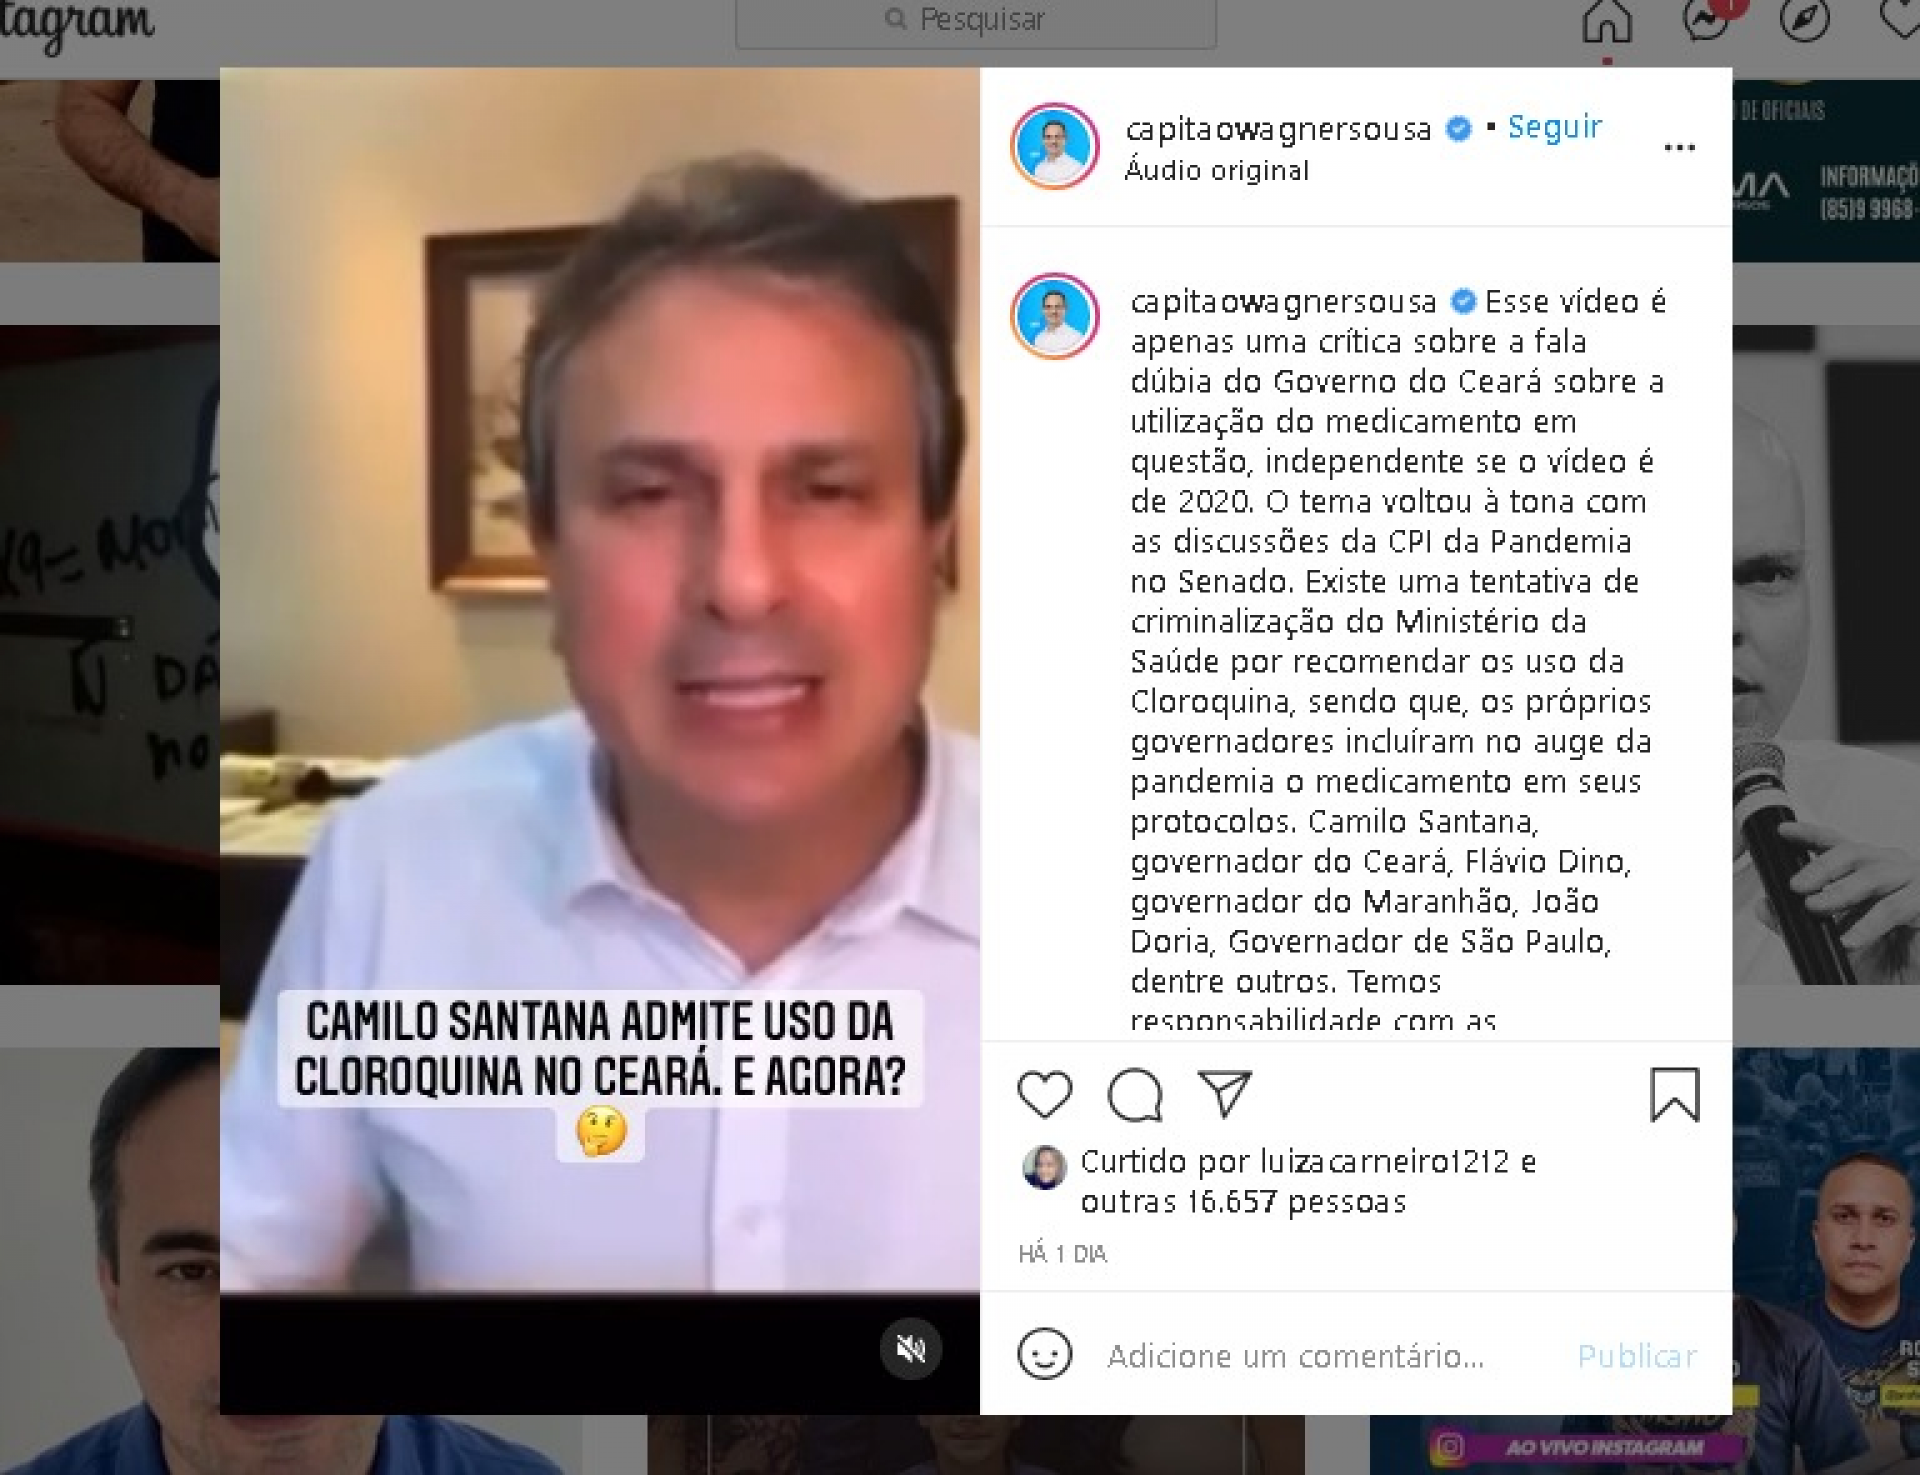 Post com o vídeo do governador Camilo Santana publicado nas redes sociais do deputado Capitão Wagner  (Foto: Reprodução/Instagram)